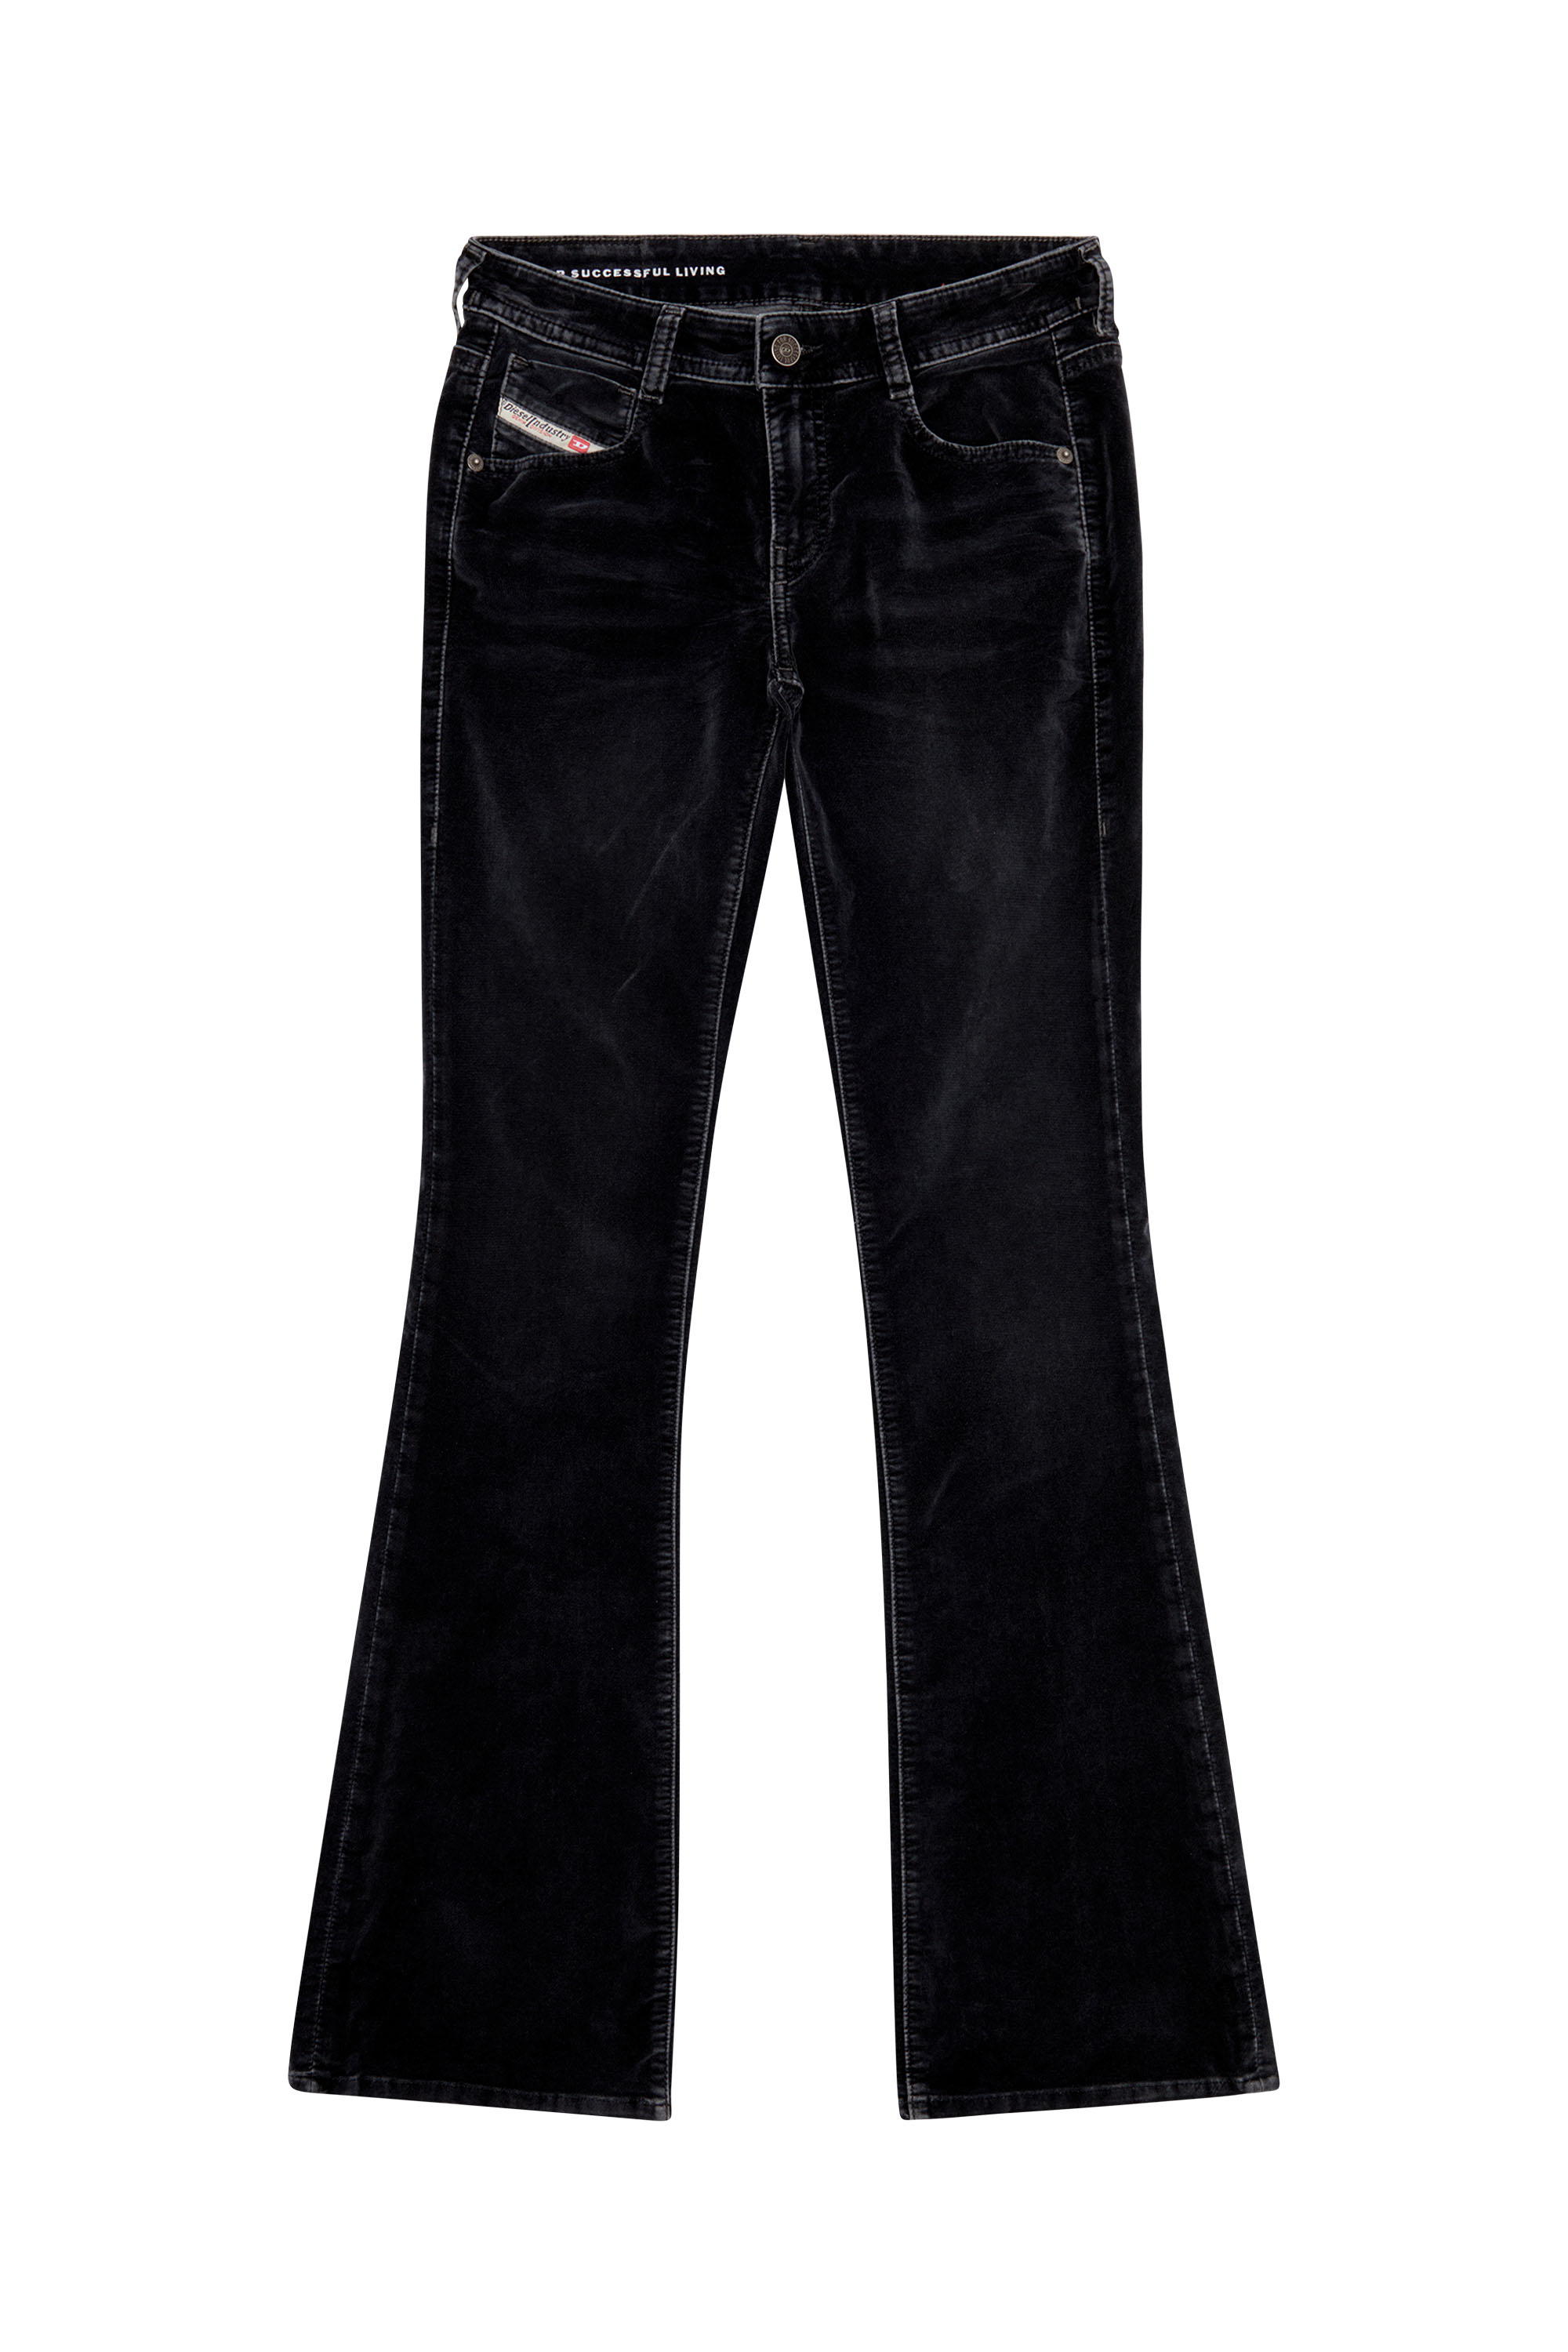 Diesel® 1969 D-Ebbey  Women's bootcut Jeans: low rise